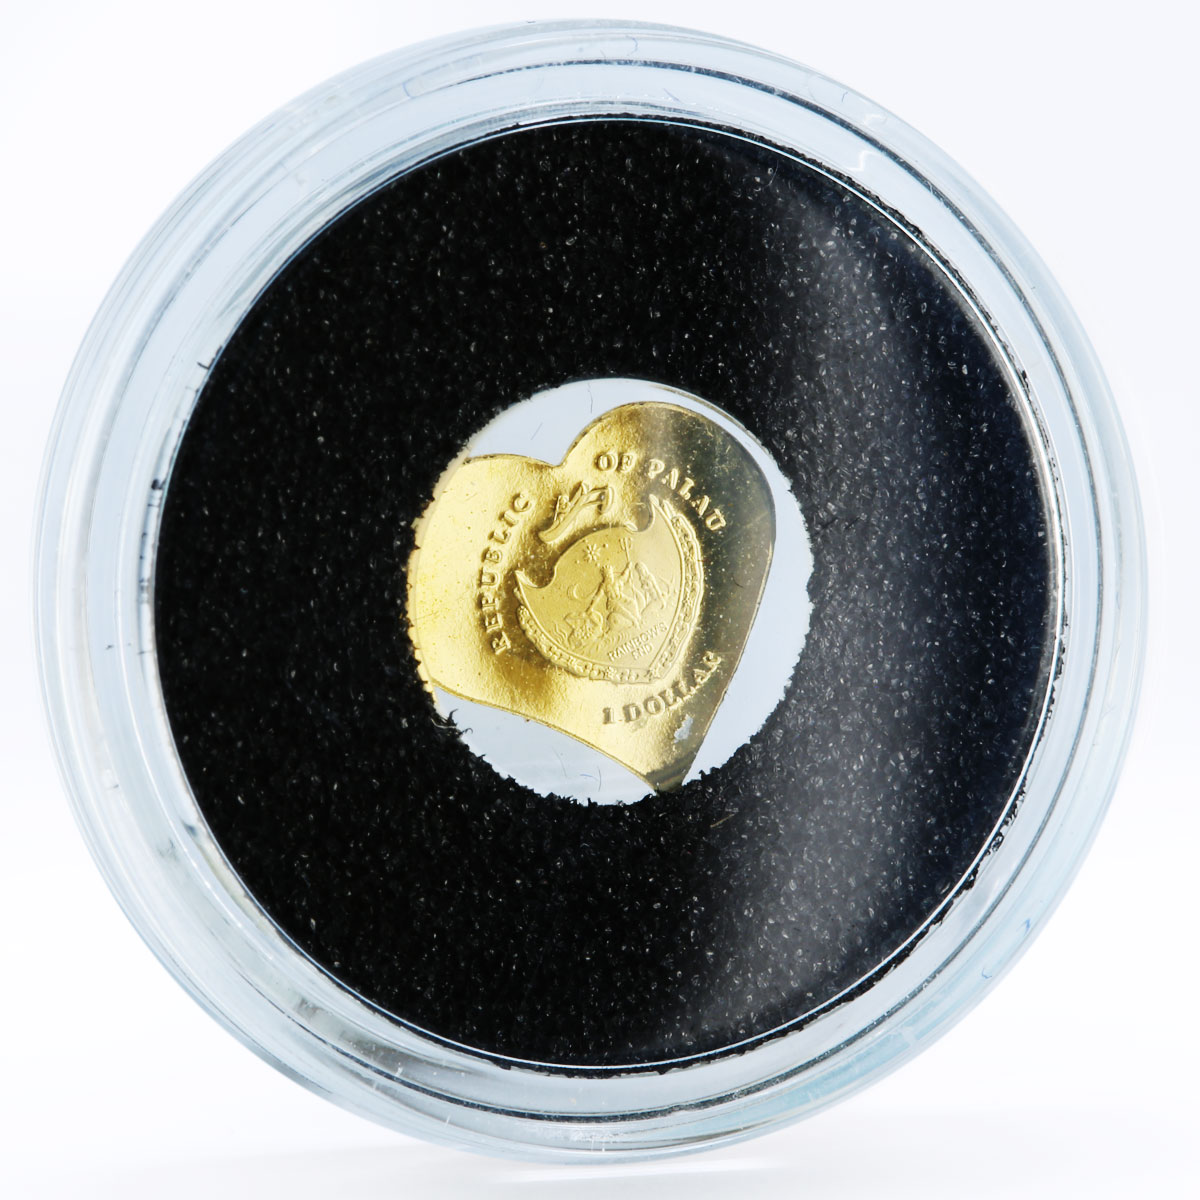 Palau 1 dollar Gold Heart Love gold coin 2008